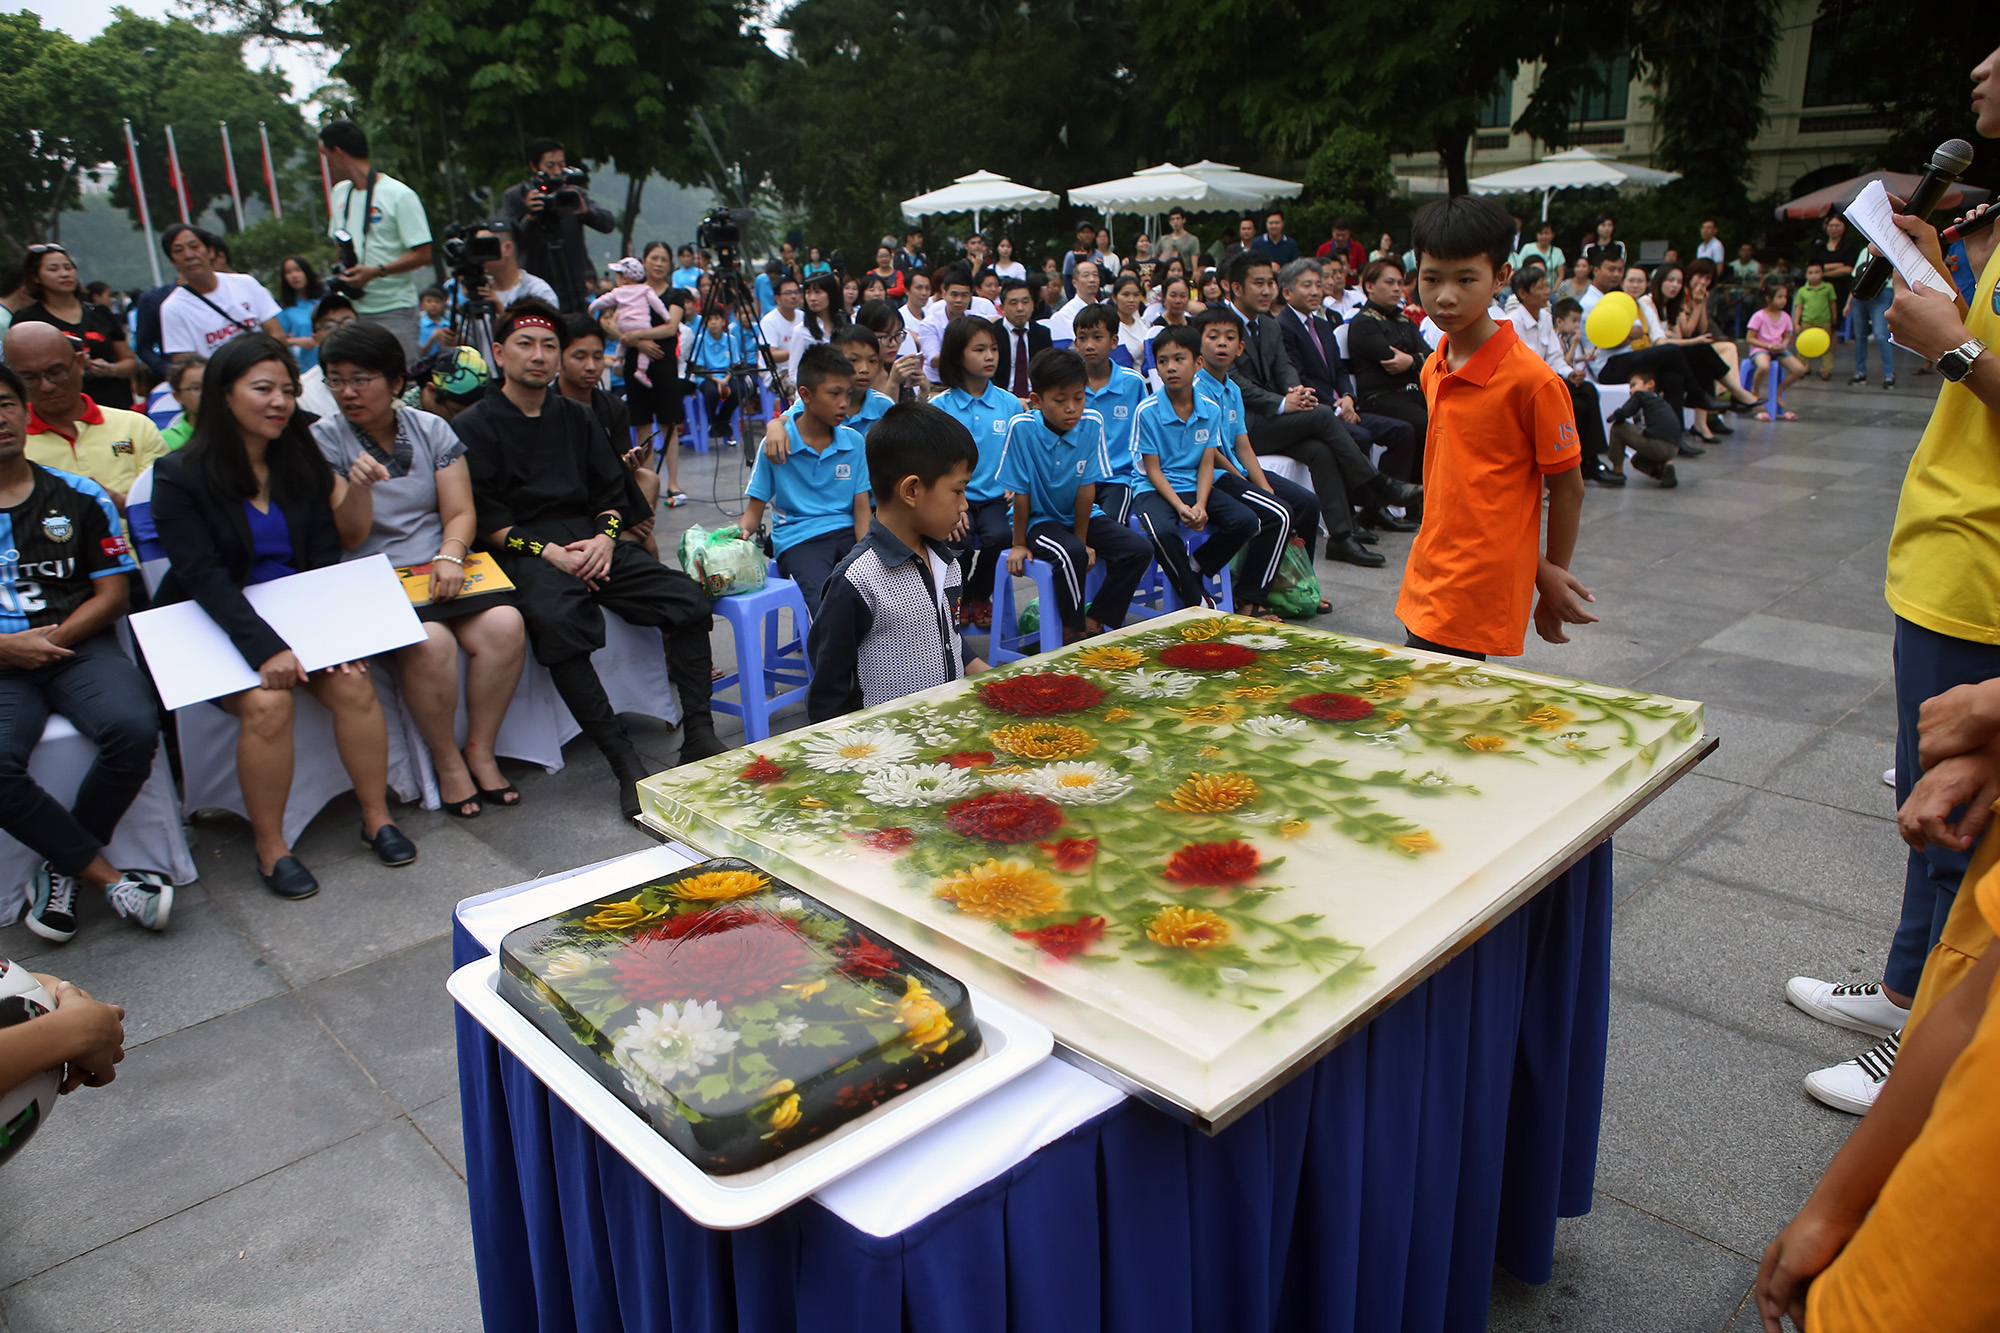 Thạch hoa khổng lồ của nghệ nhân Kiều Vân và Huyền Đào - 2 trong số những nghệ nhân làm bánh rau câu 3D đầu tiên ở Hà Nội. 2 nữ nghệ nhân tặng bánh cho chương trình với mong muốn góp sức nhỏ ủng hộ trẻ em ảnh hưởng bởi tai nạn giao thông. Tất cả nguyên liệu làm bánh đều tự nhiên, tốt cho sức khỏe.